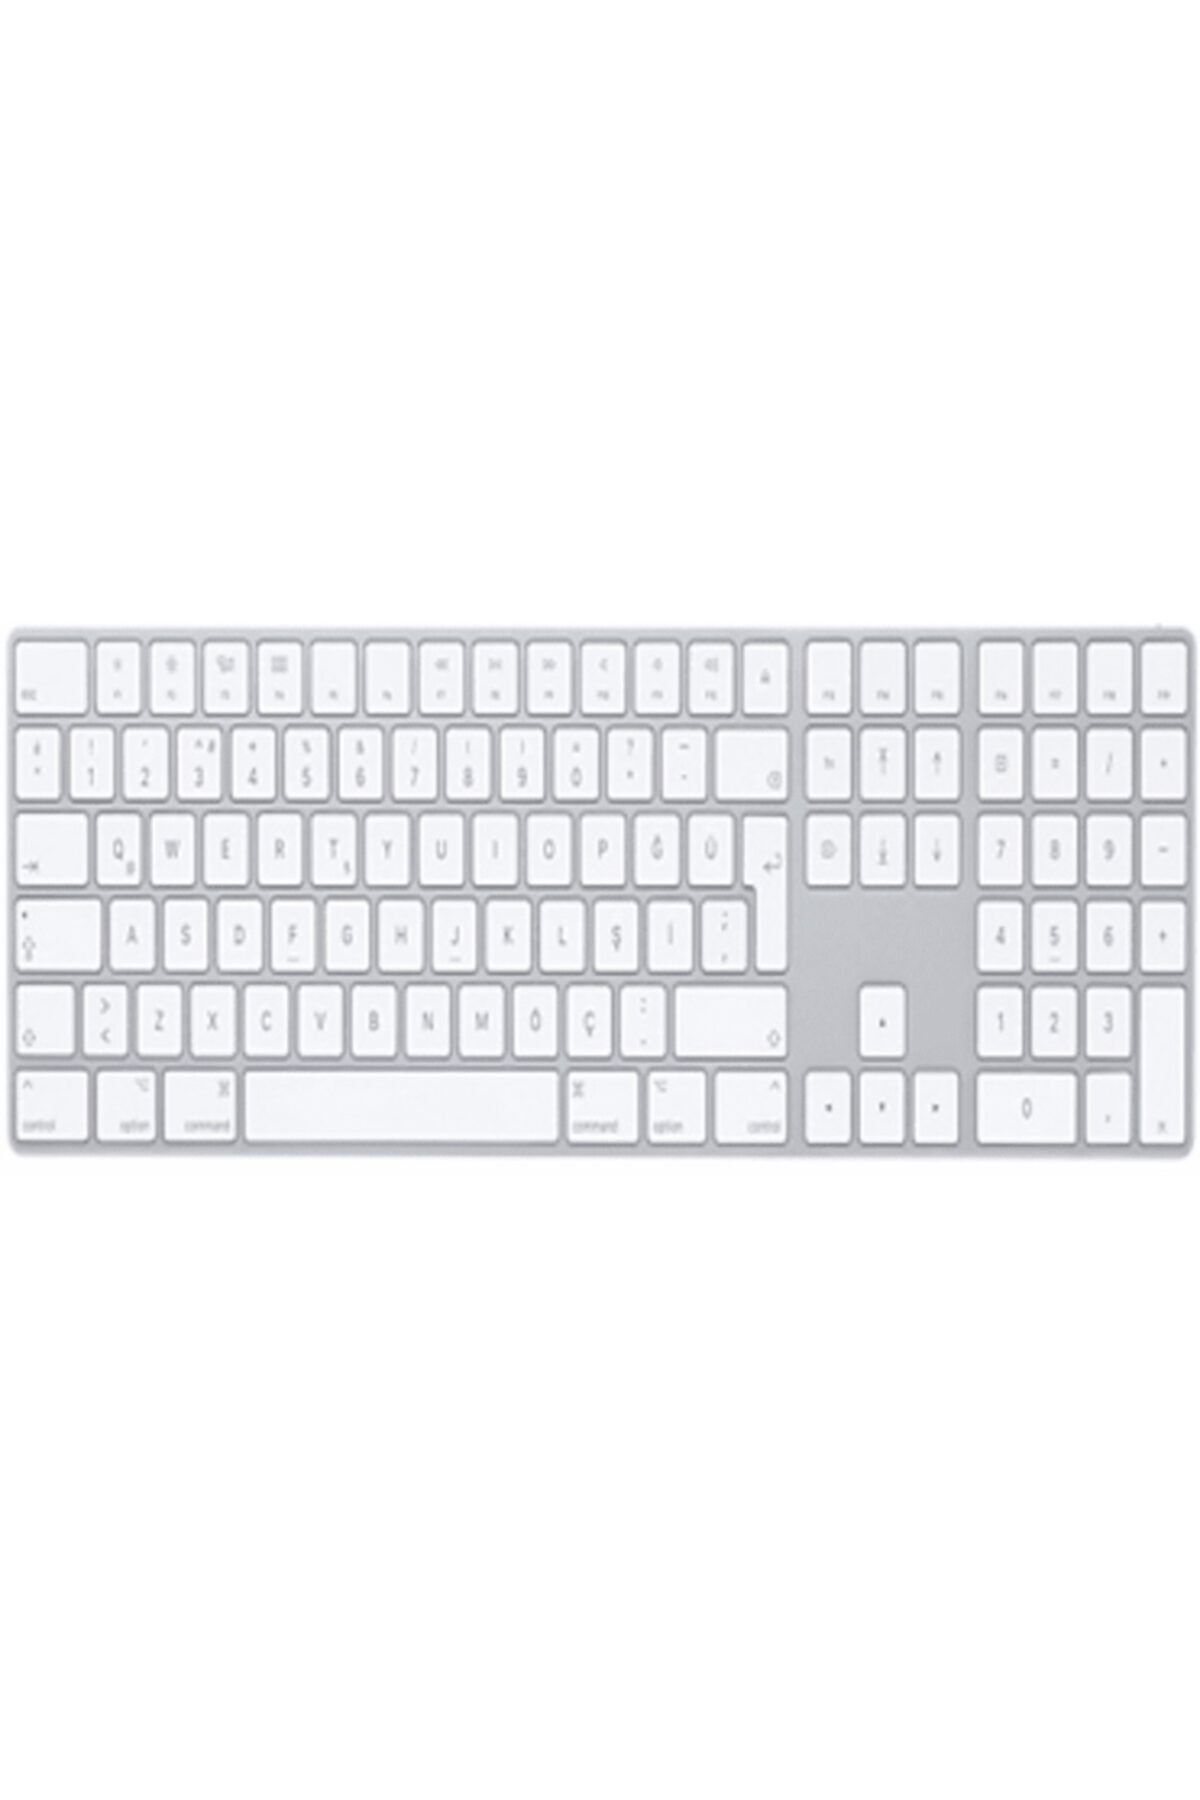 Apple Sayısal Tuş Takımlı Magic Keyboard - Türkçe Q Klavye